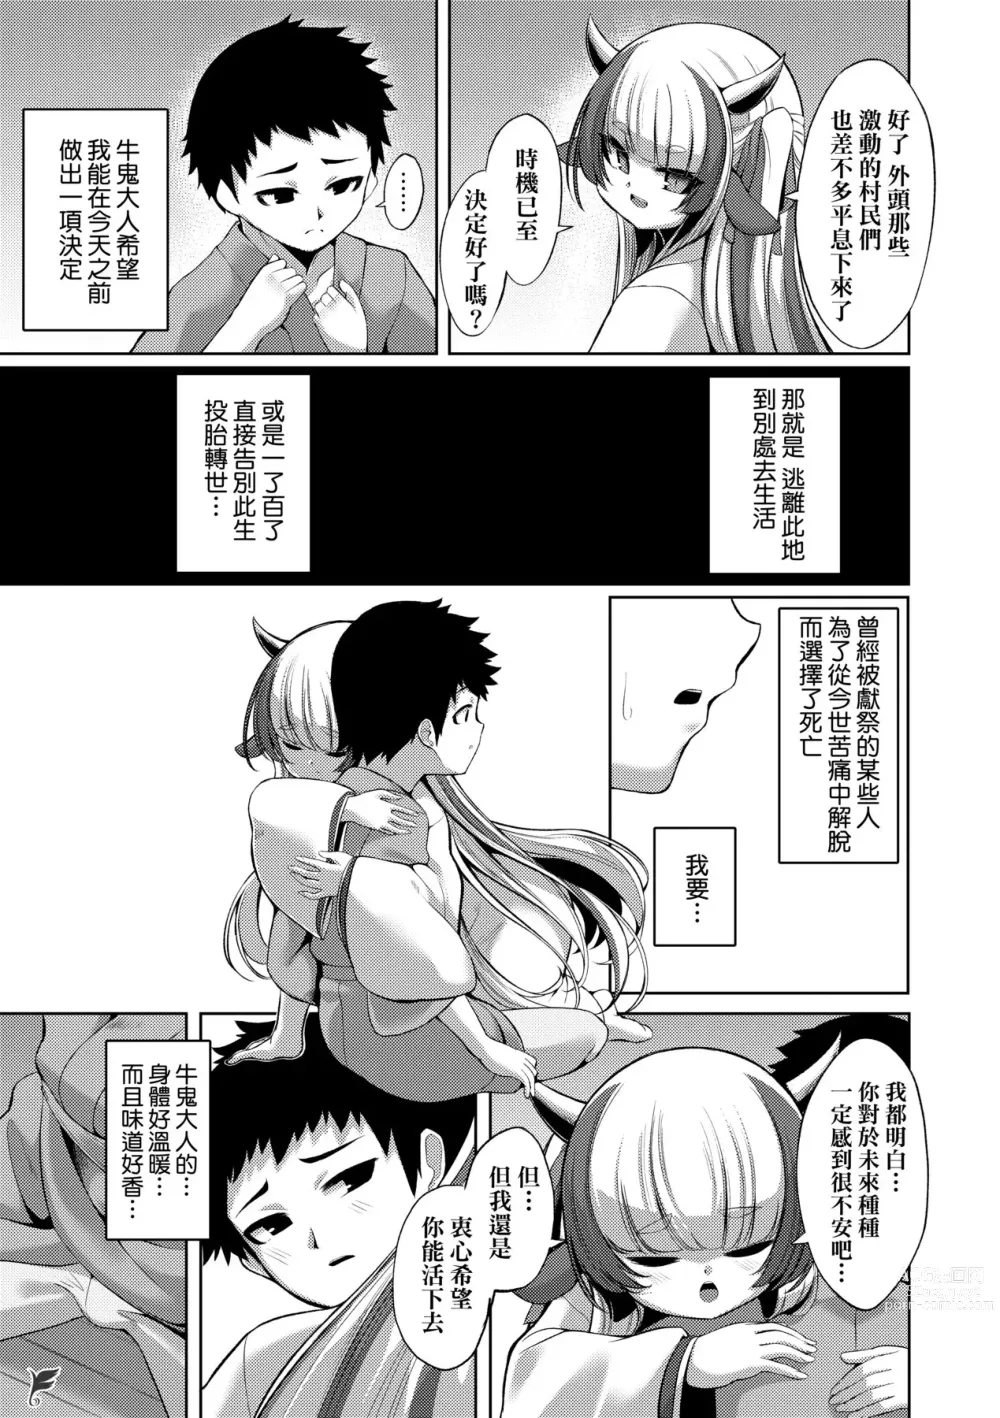 Page 7 of doujinshi やさしいかみさき+~弔~